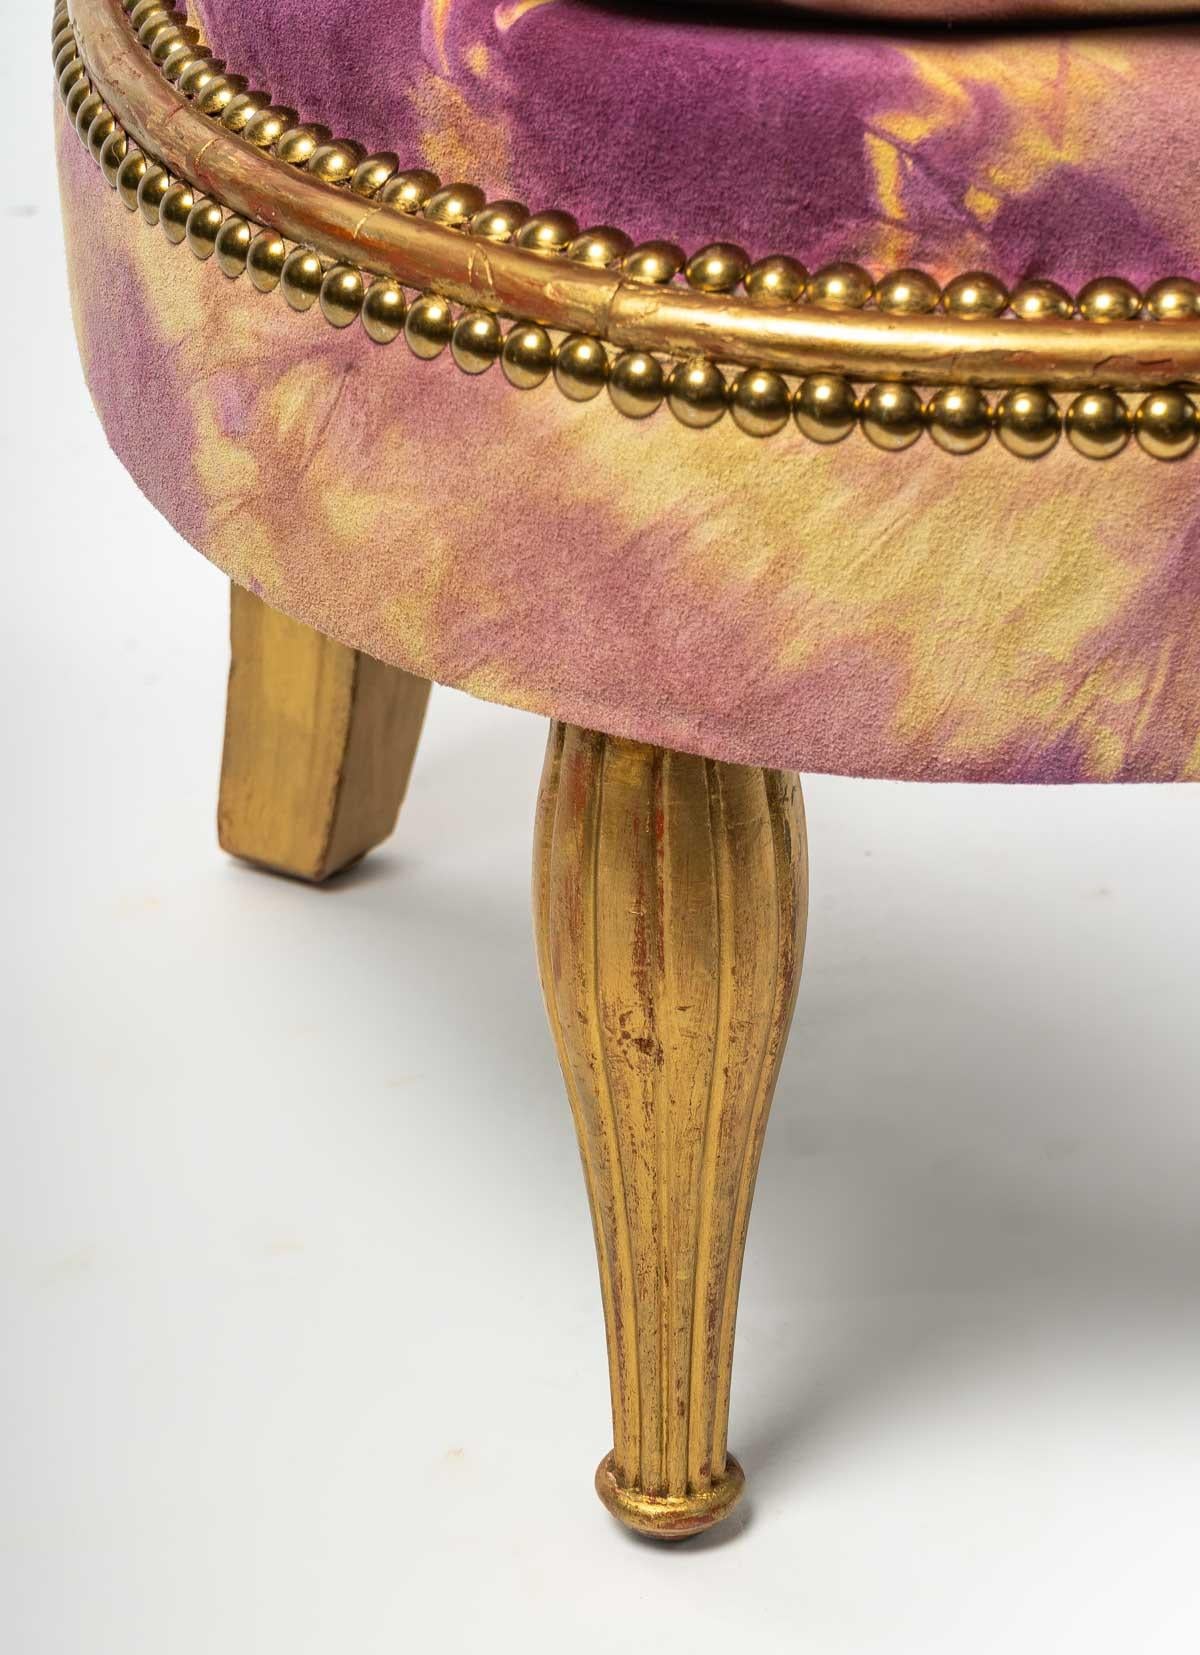 Paire de charmants petits fauteuils en hêtre doré, époque Art Déco, entièrement restaurés avec soin par les ateliers TWS (Calais) et revisités avec la pause d'un magnifique cuir de la prestigieuse Maison de Couture : Jean-Paul Gautier, tout comme